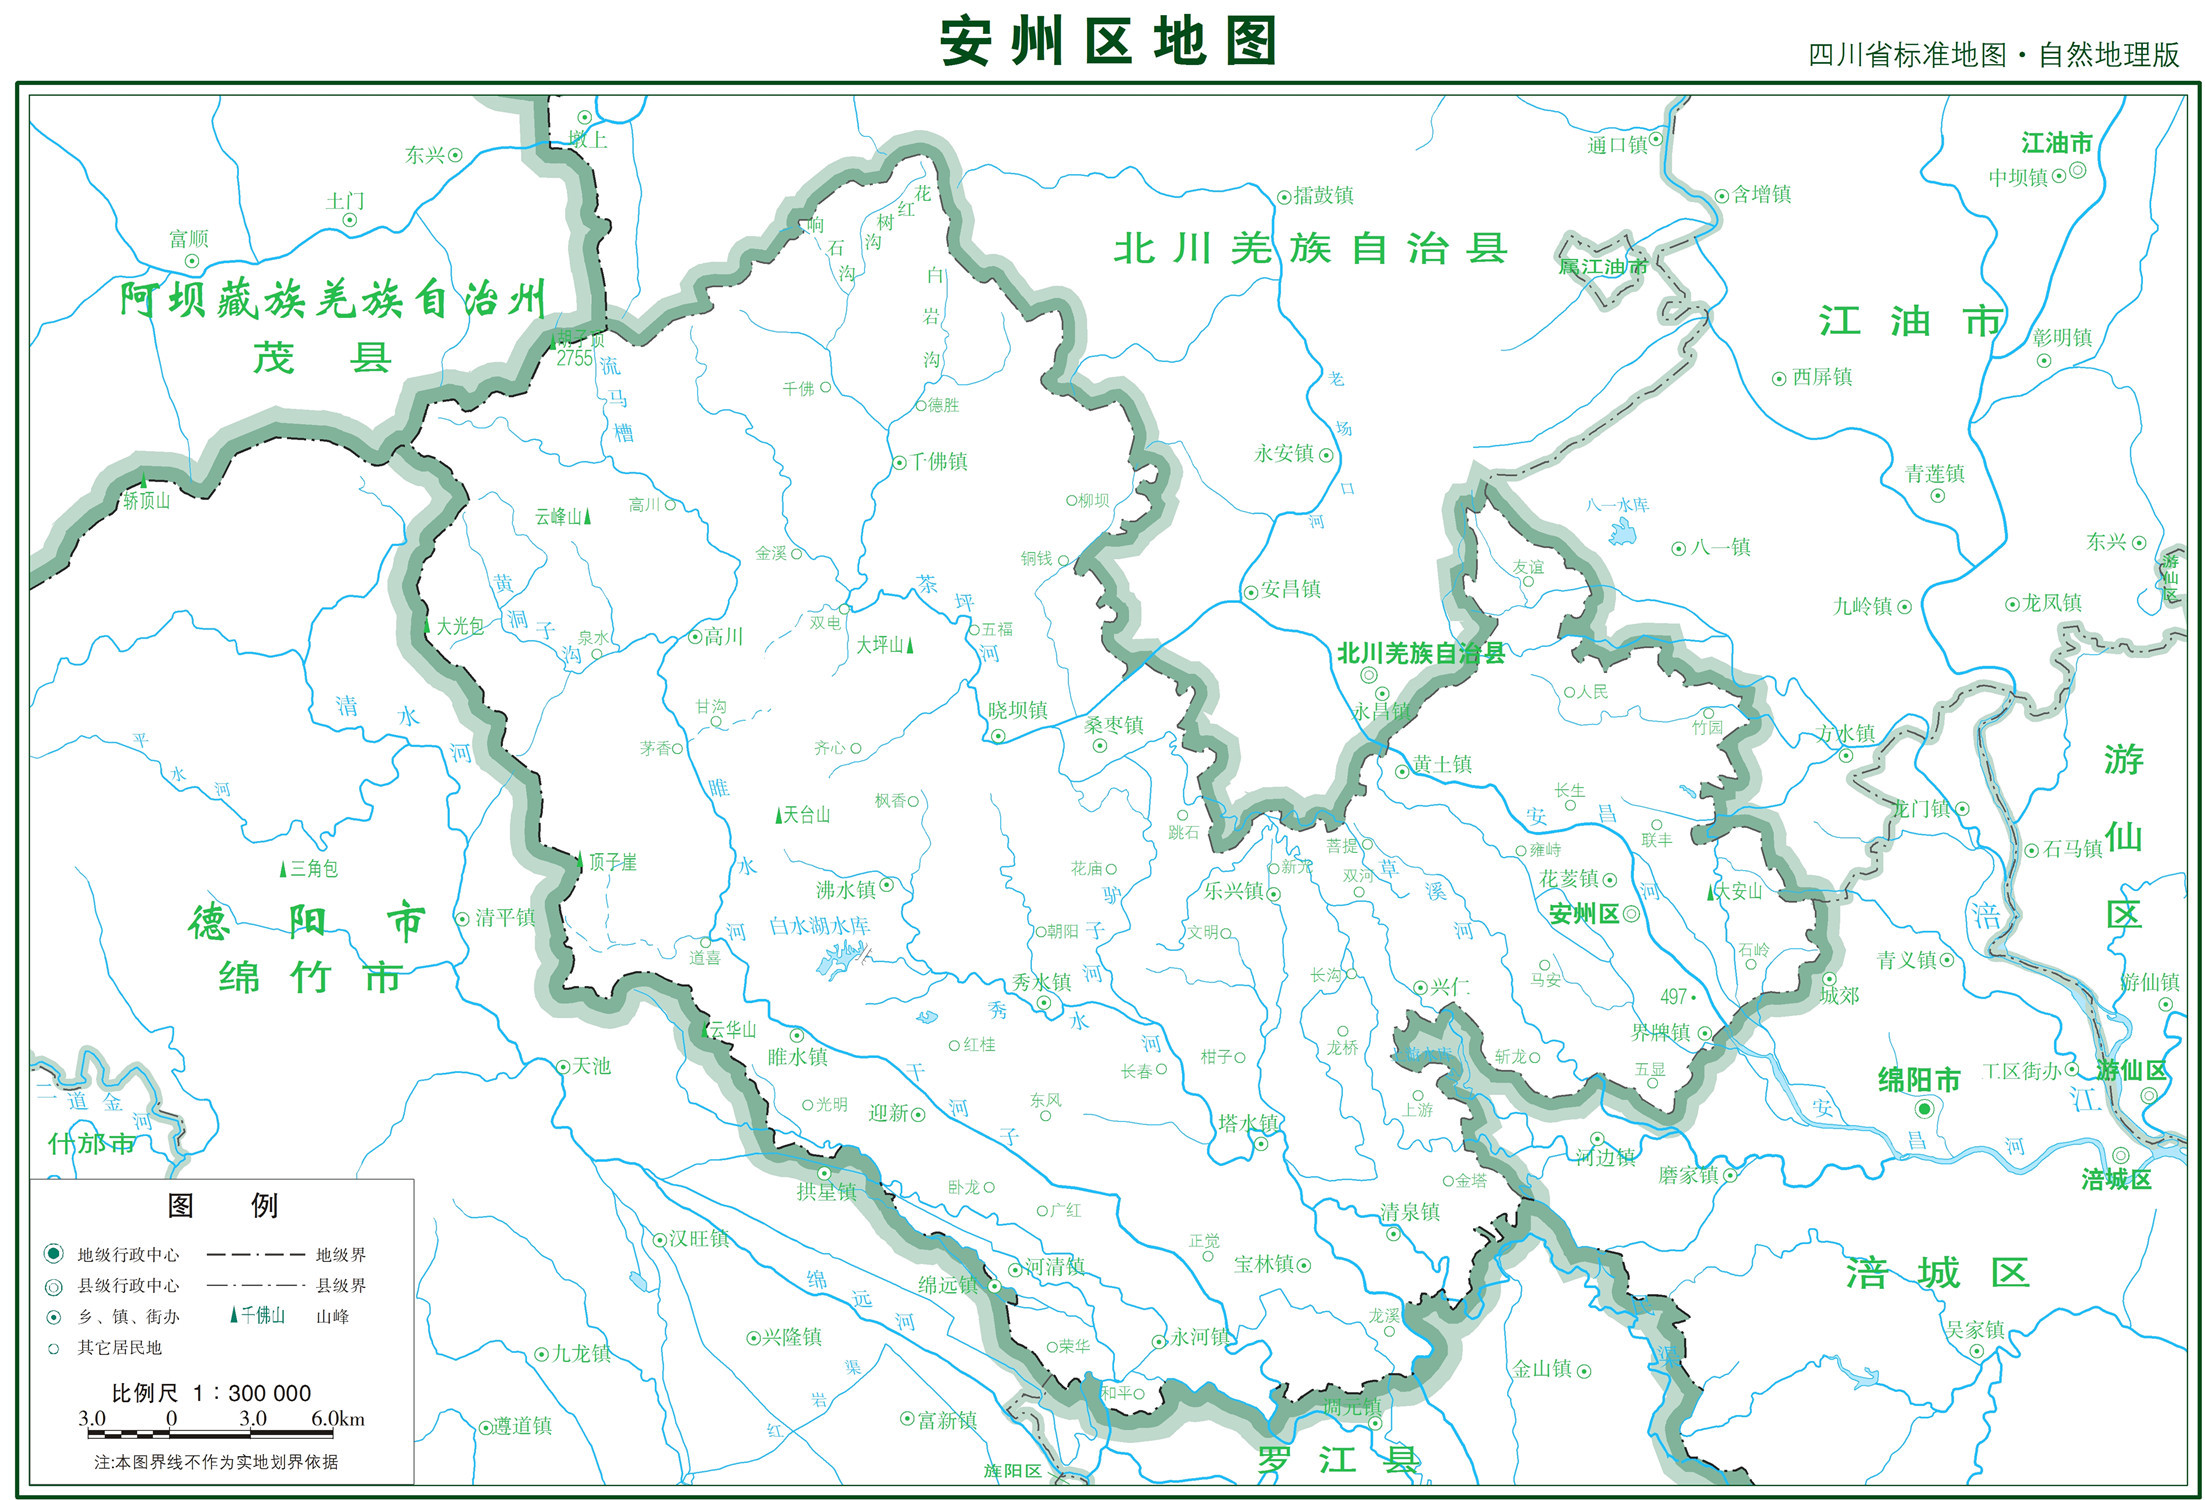 江安县POI数据|边界|建筑轮廓|铁路轨道|道路路网|水域|水系水路|GeoJSON|Shapefile-宜宾市-四川省-POI数据-POI数据